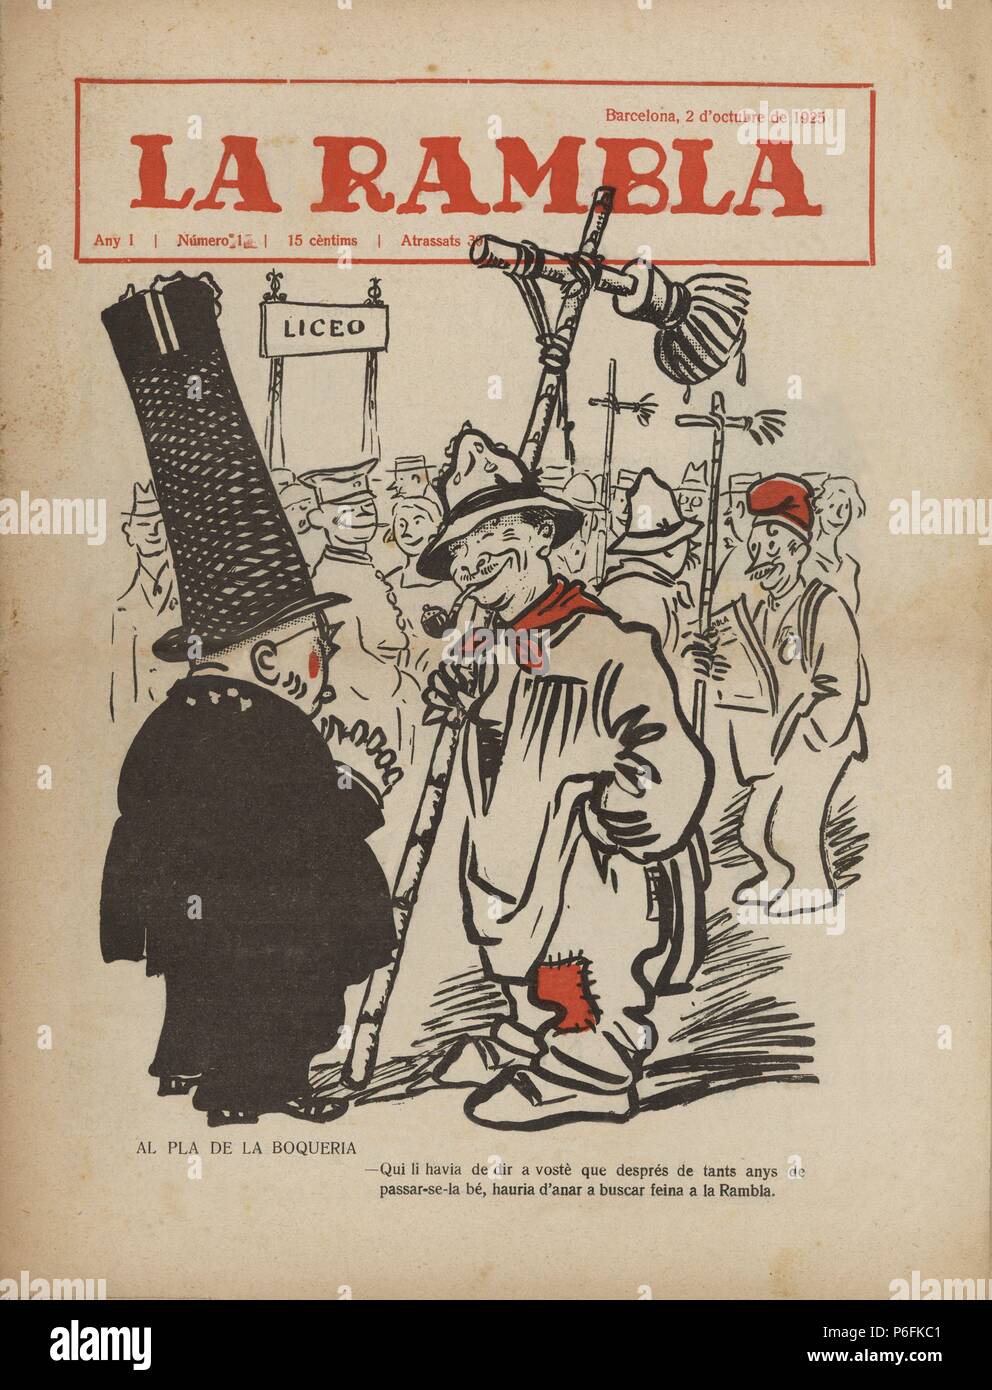 Portada de la revista satírica 'La Rambla', año 1, número 1, editada en Barcelona, 2 octubre 1925. Stock Photo